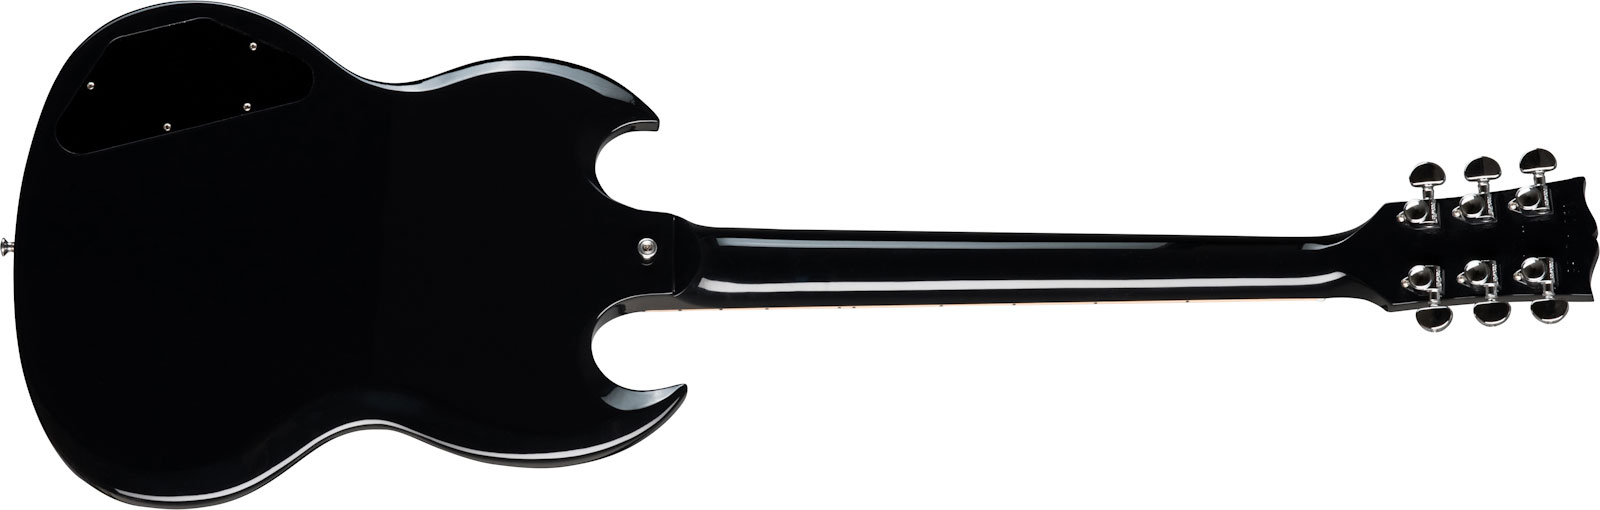 Gibson Sg Standard Lh Gaucher 2h Ht Rw - Ebony - E-Gitarre für Linkshänder - Variation 1